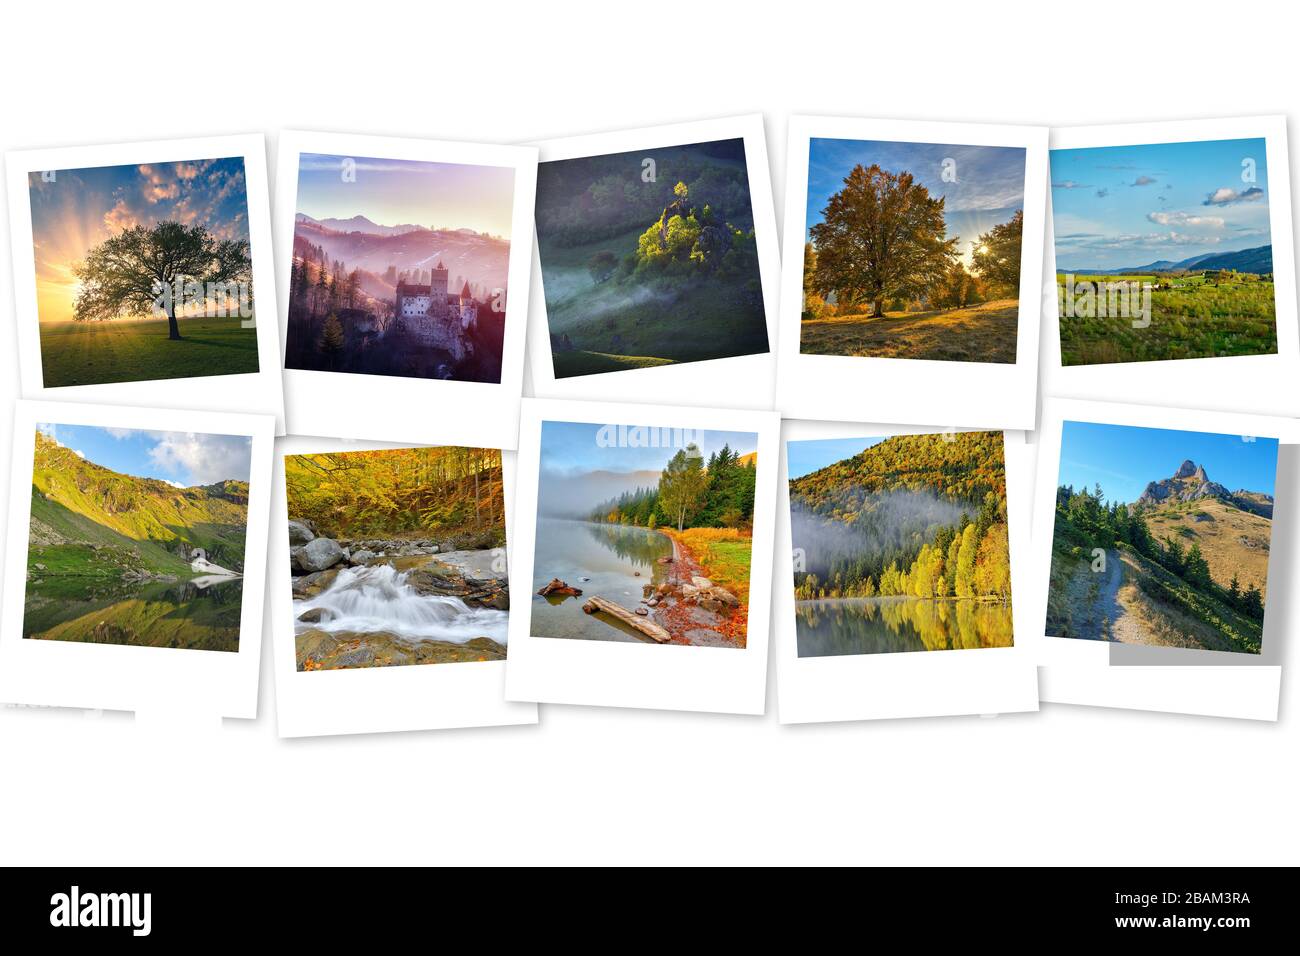 Collage photo avec photos de paysage nature. Montagnes, lacs, arbres, couchers de soleil. Concept de photographie Banque D'Images